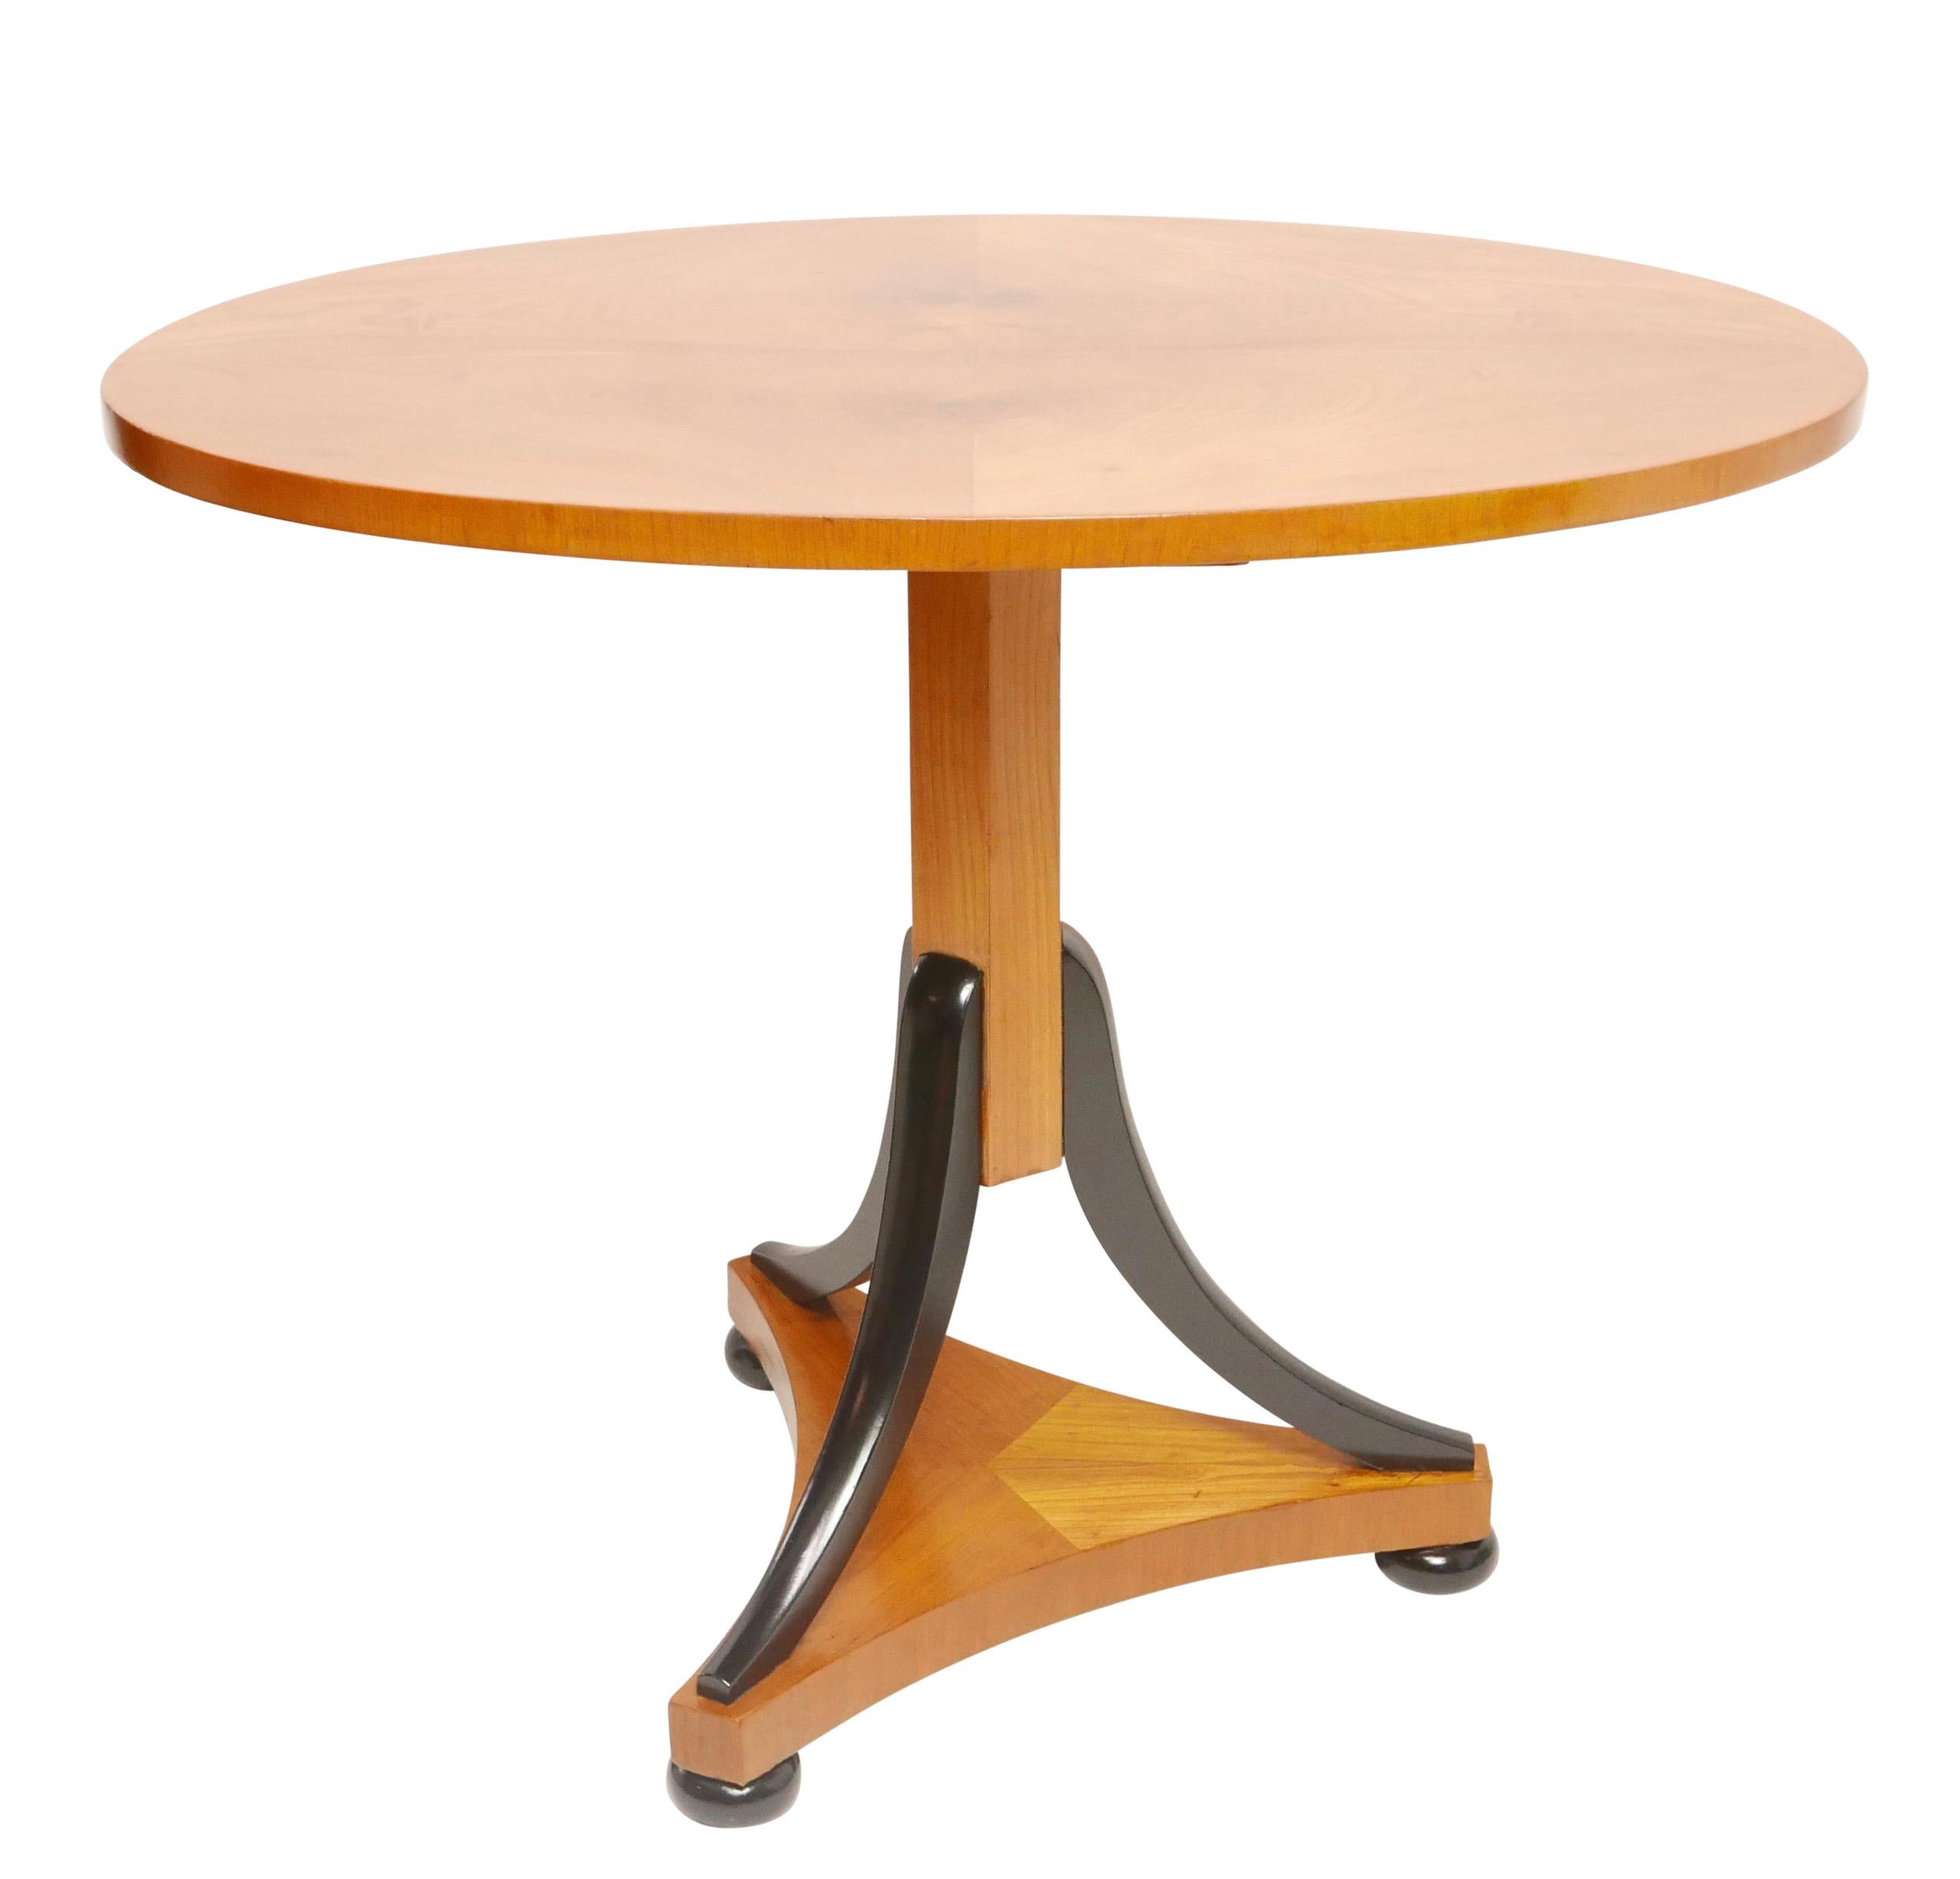 Ungewöhnlicher ovaler Kirschholztisch im Biedermeier-Stil mit kippbarer Tischplatte, gestützt auf eine Mittelsäule mit drei gespreizten ebonisierten Stützen, die an einem dreiteiligen Sockel befestigt sind und auf ebonisierten Stollenfüßen